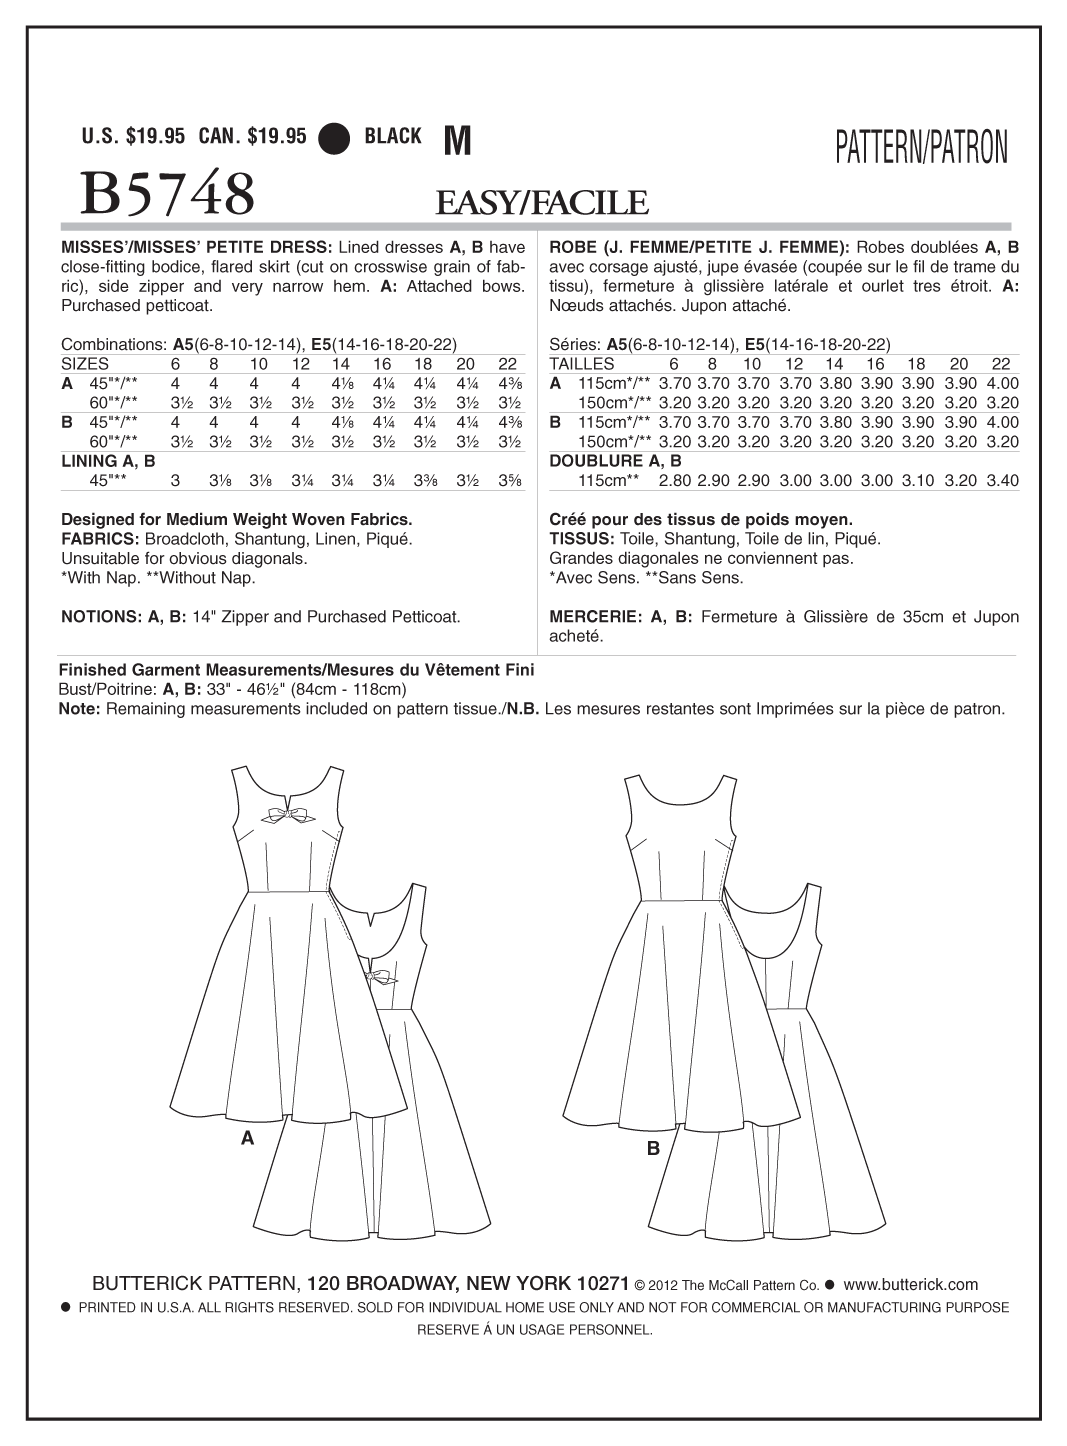 Butterick B5748 Misses'/Misses' Petite Dress